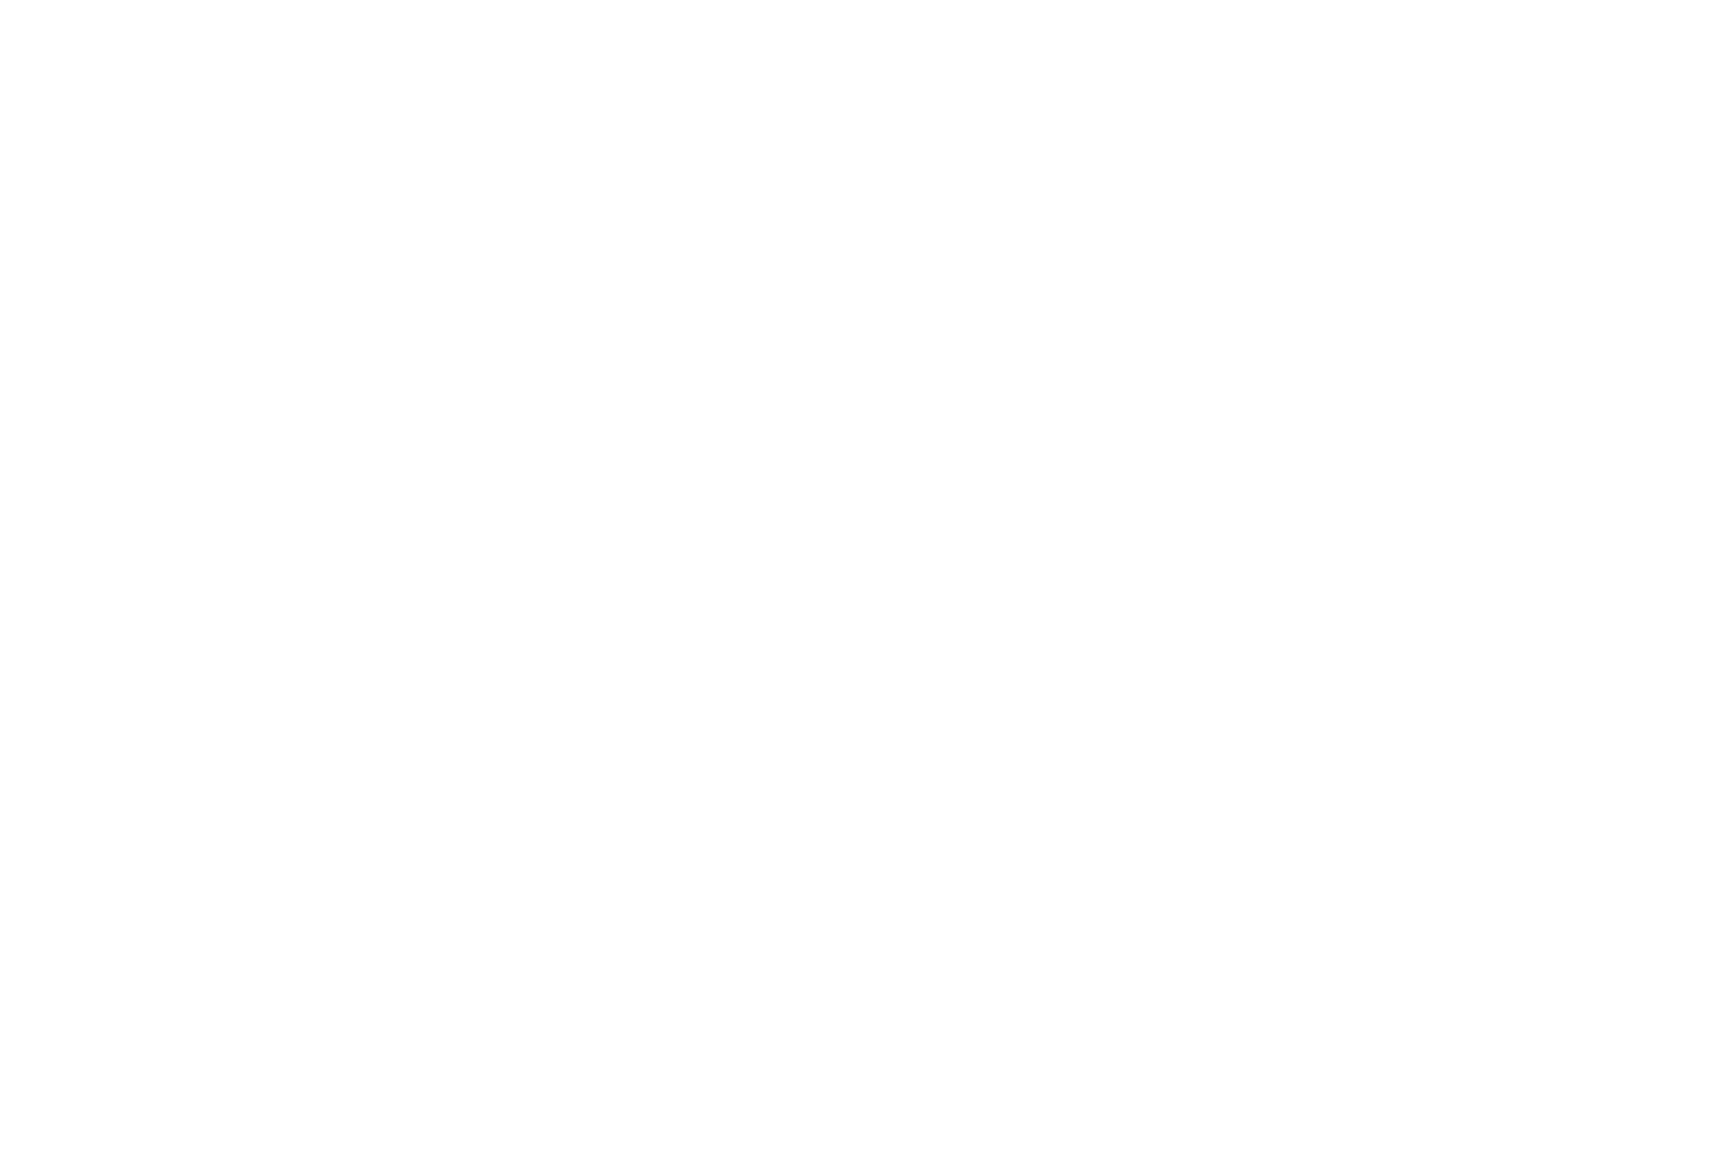 Winner - Best Young Actress - European Cinematography AWARDS ECA - 2023 (3)